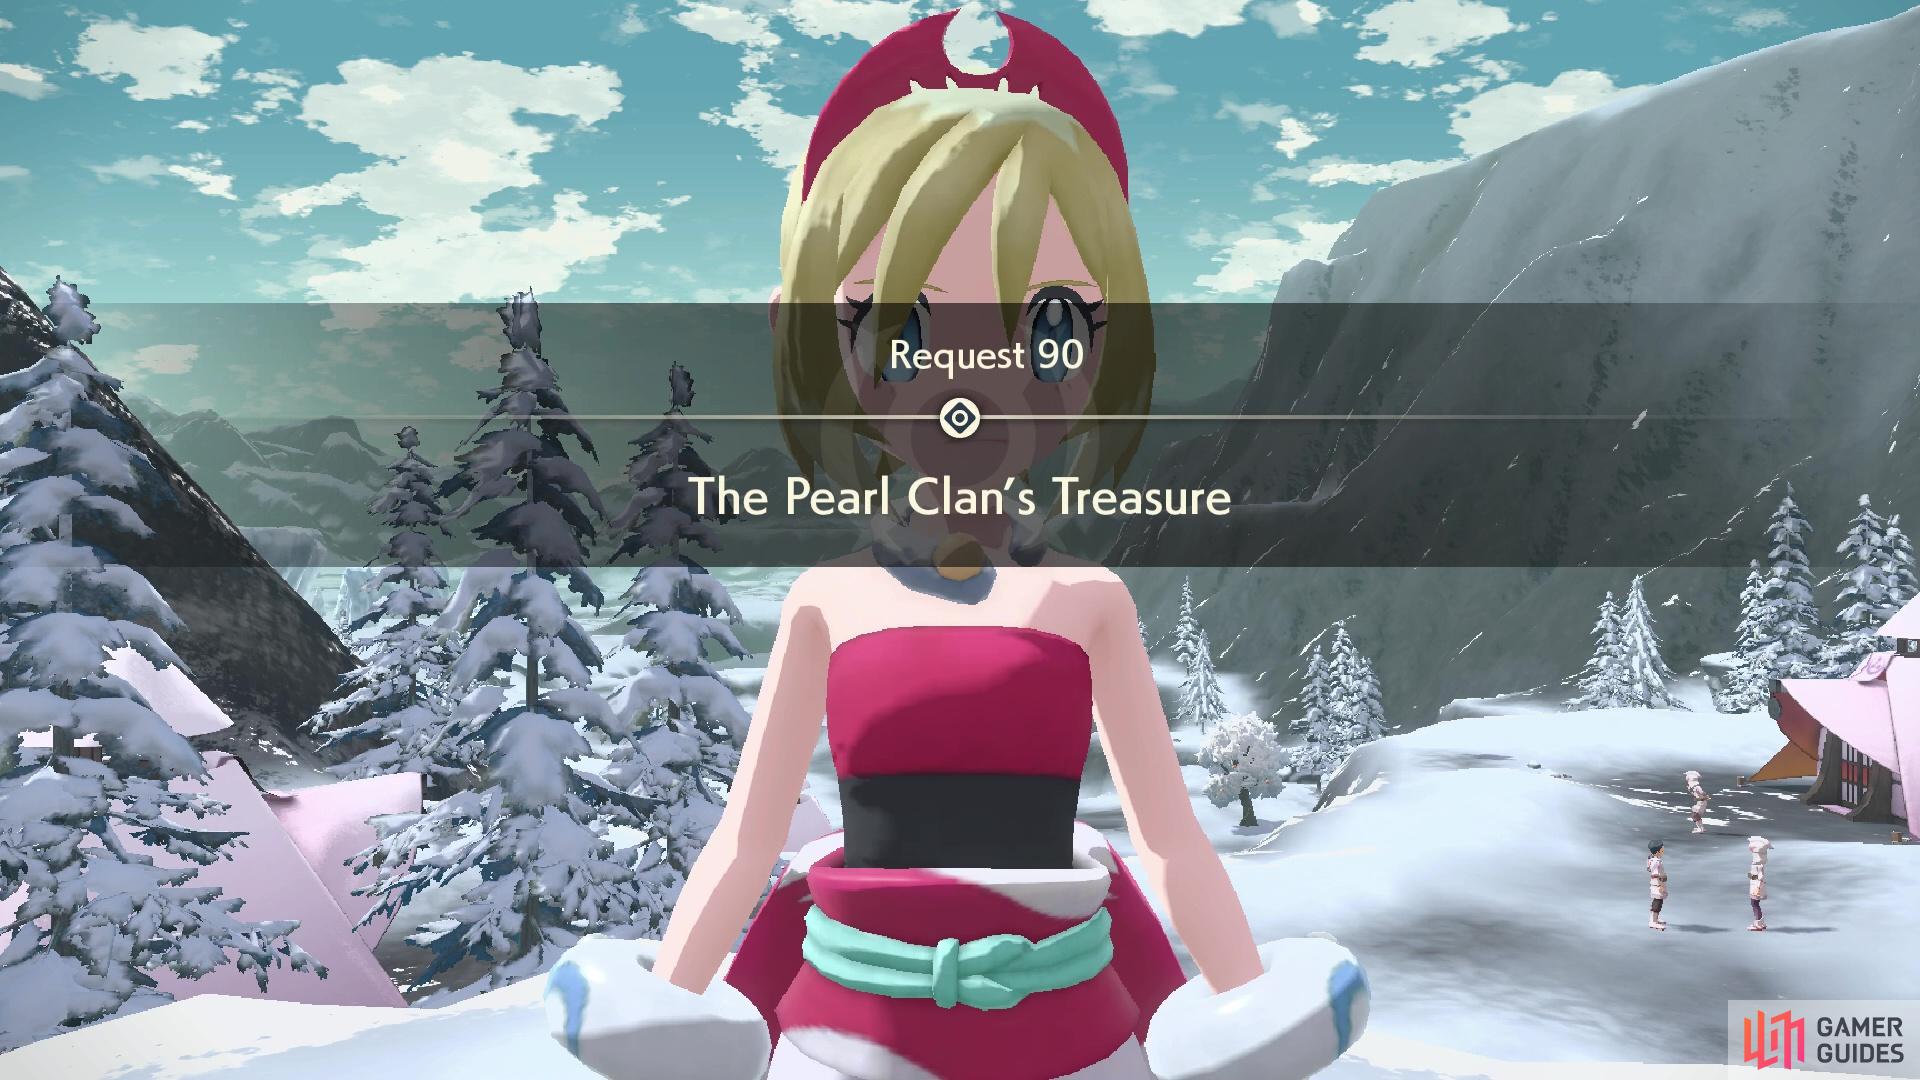 Request 90: The Pearl Clan's Treasure.